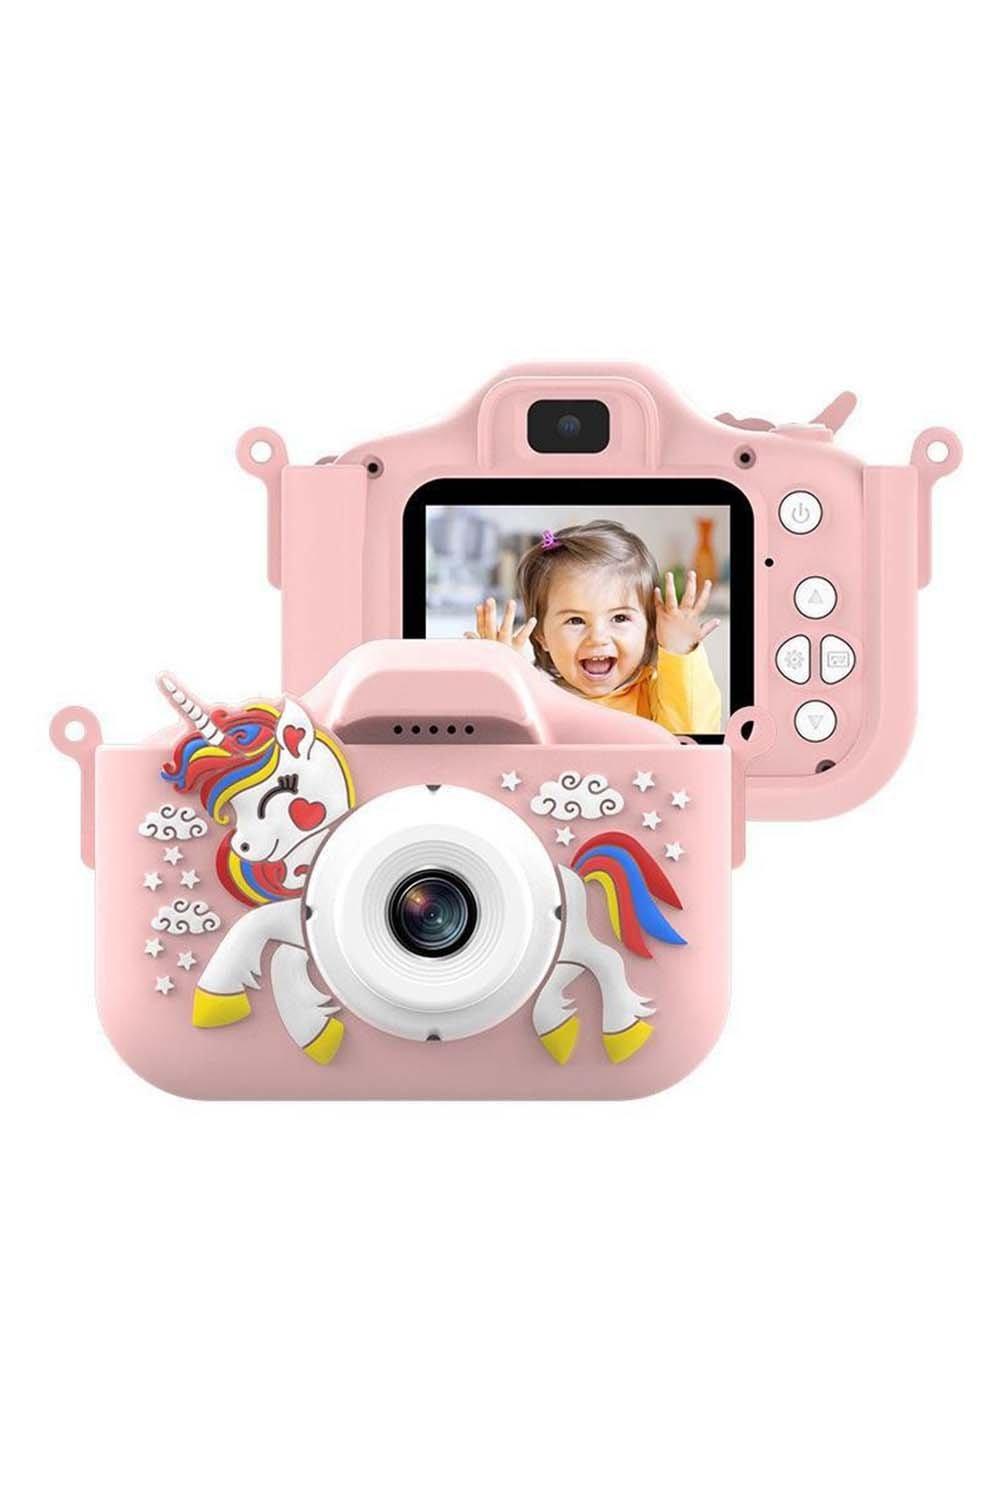 X10S Unicorn Kids Digital Camera with 4800W HD